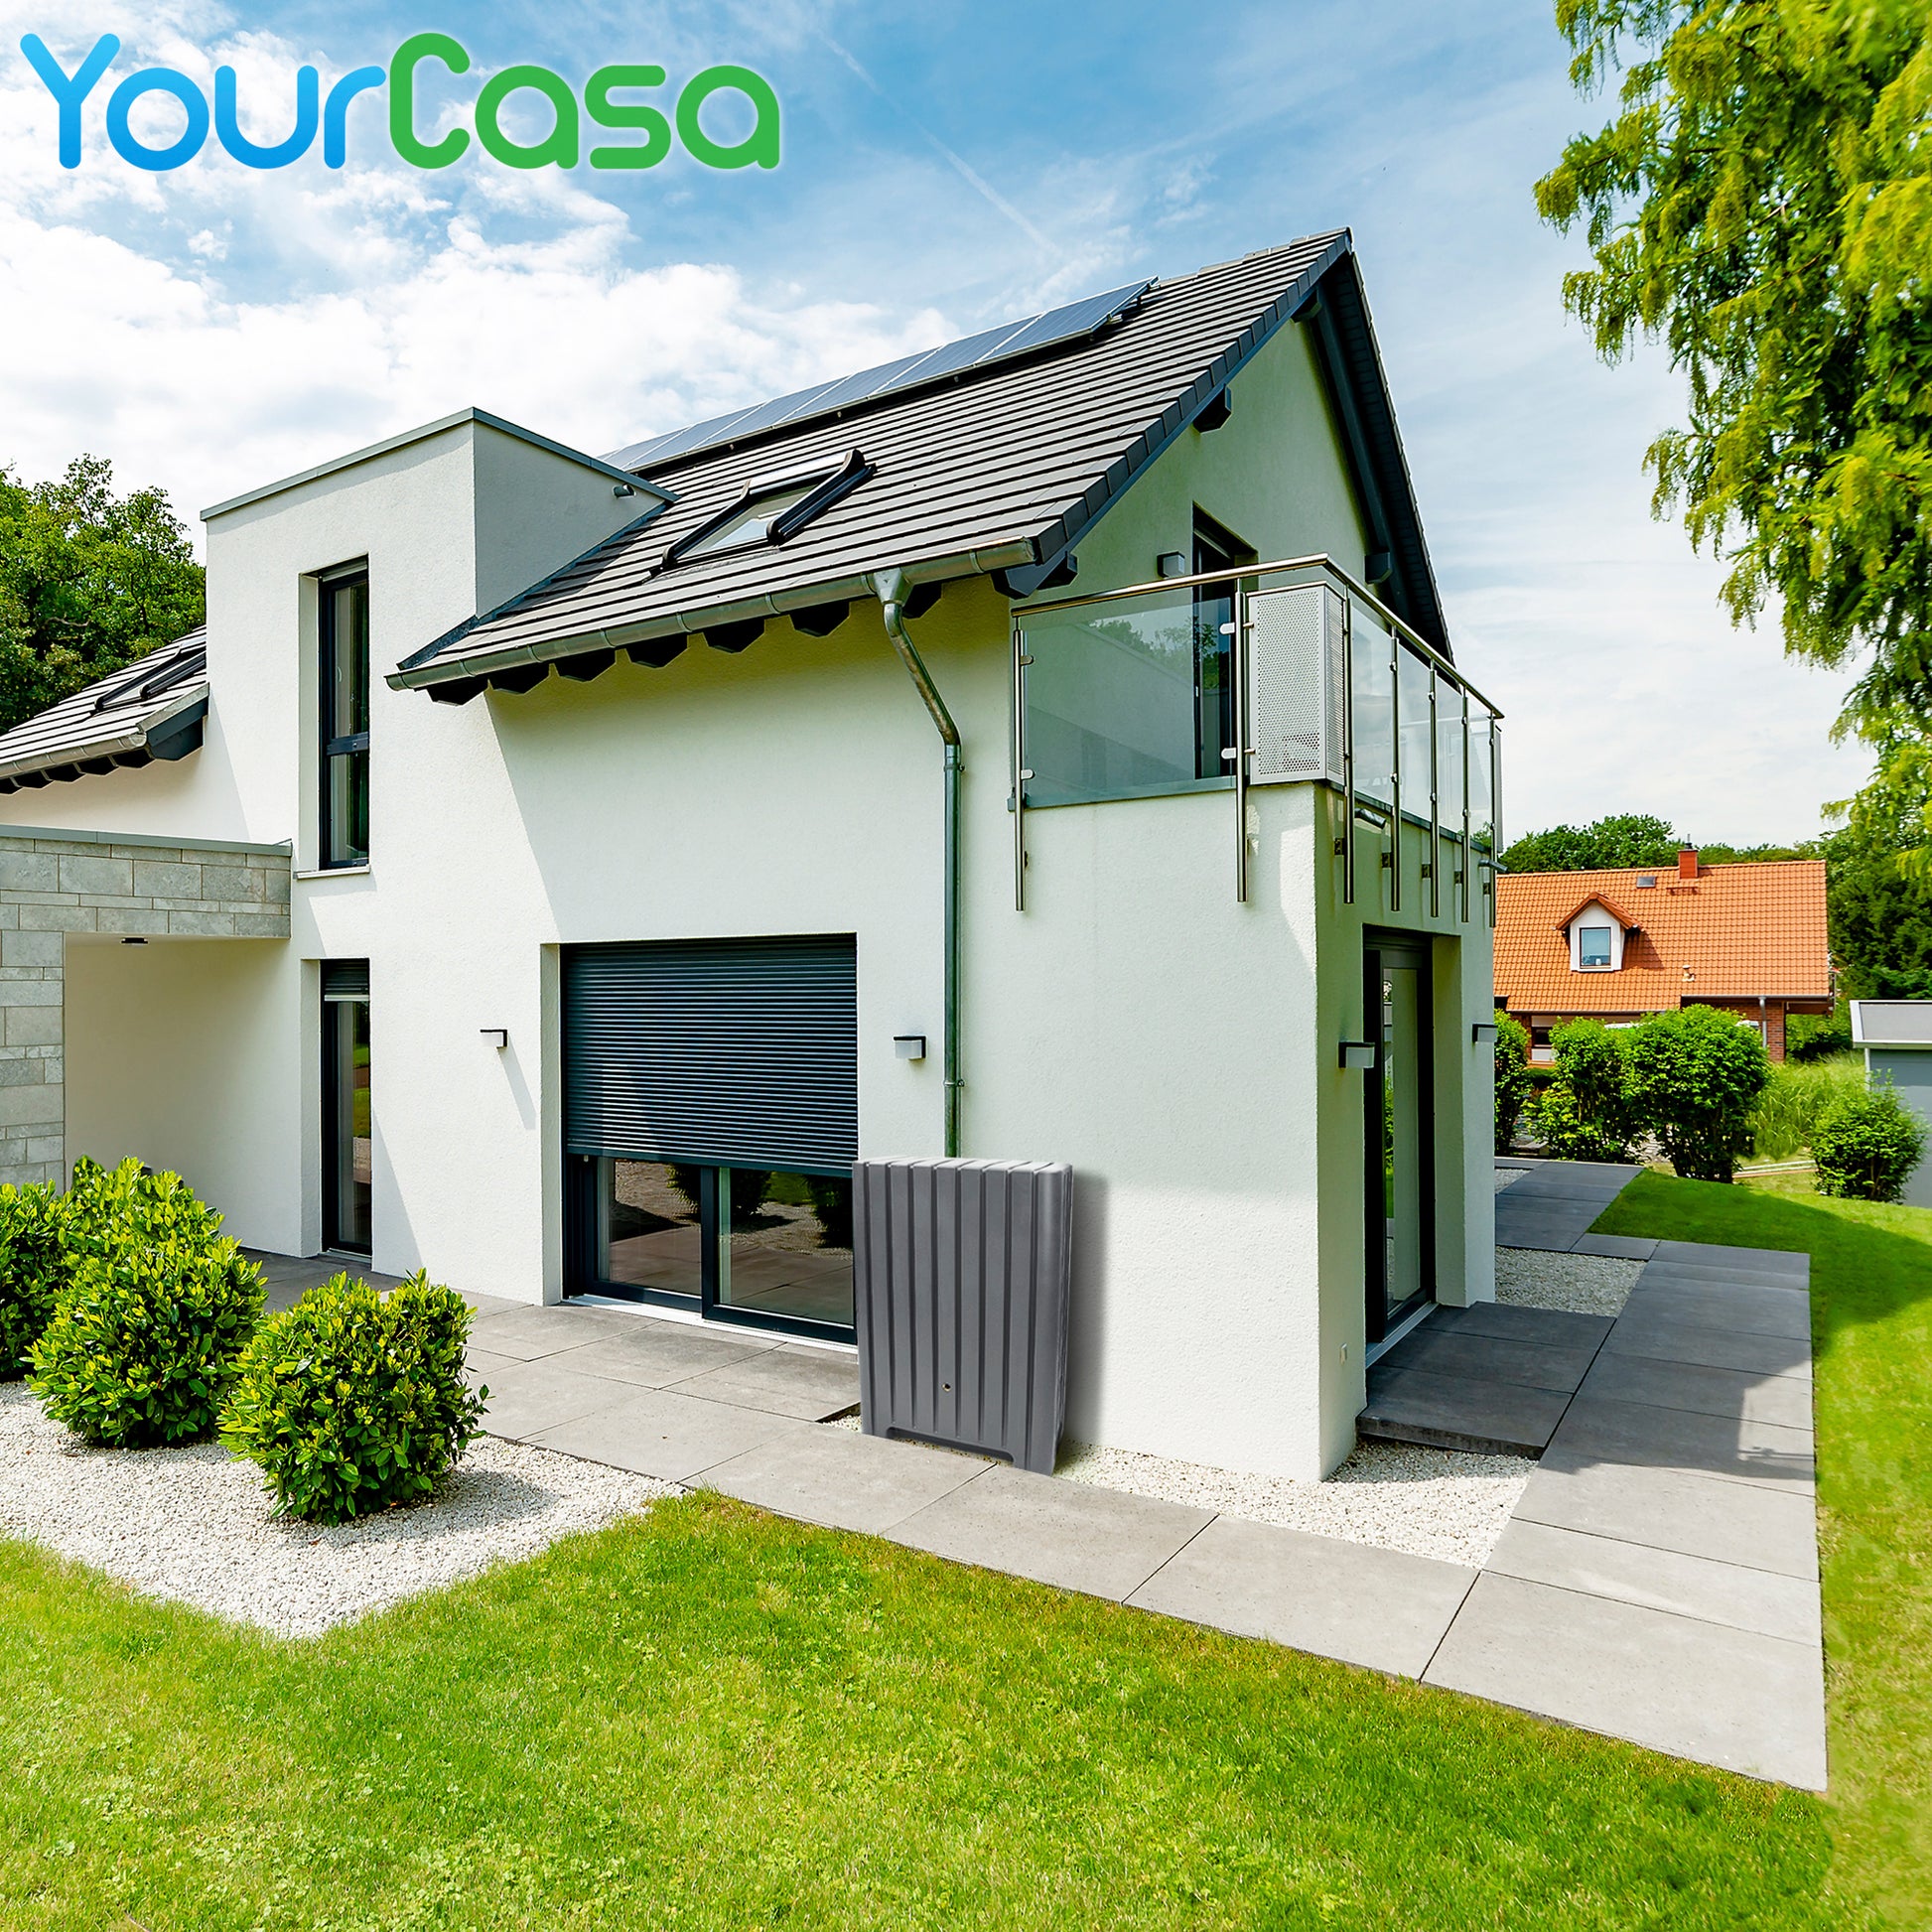 Ein Haus mit einem YourCasa Regentonne 280 Liter [UrbanElegance] Metallgewinde und Deckel - Regenfass Frostsicher aus Kunststoff - Regenwassertonne - Wandtank Solarpanel auf dem Dach.